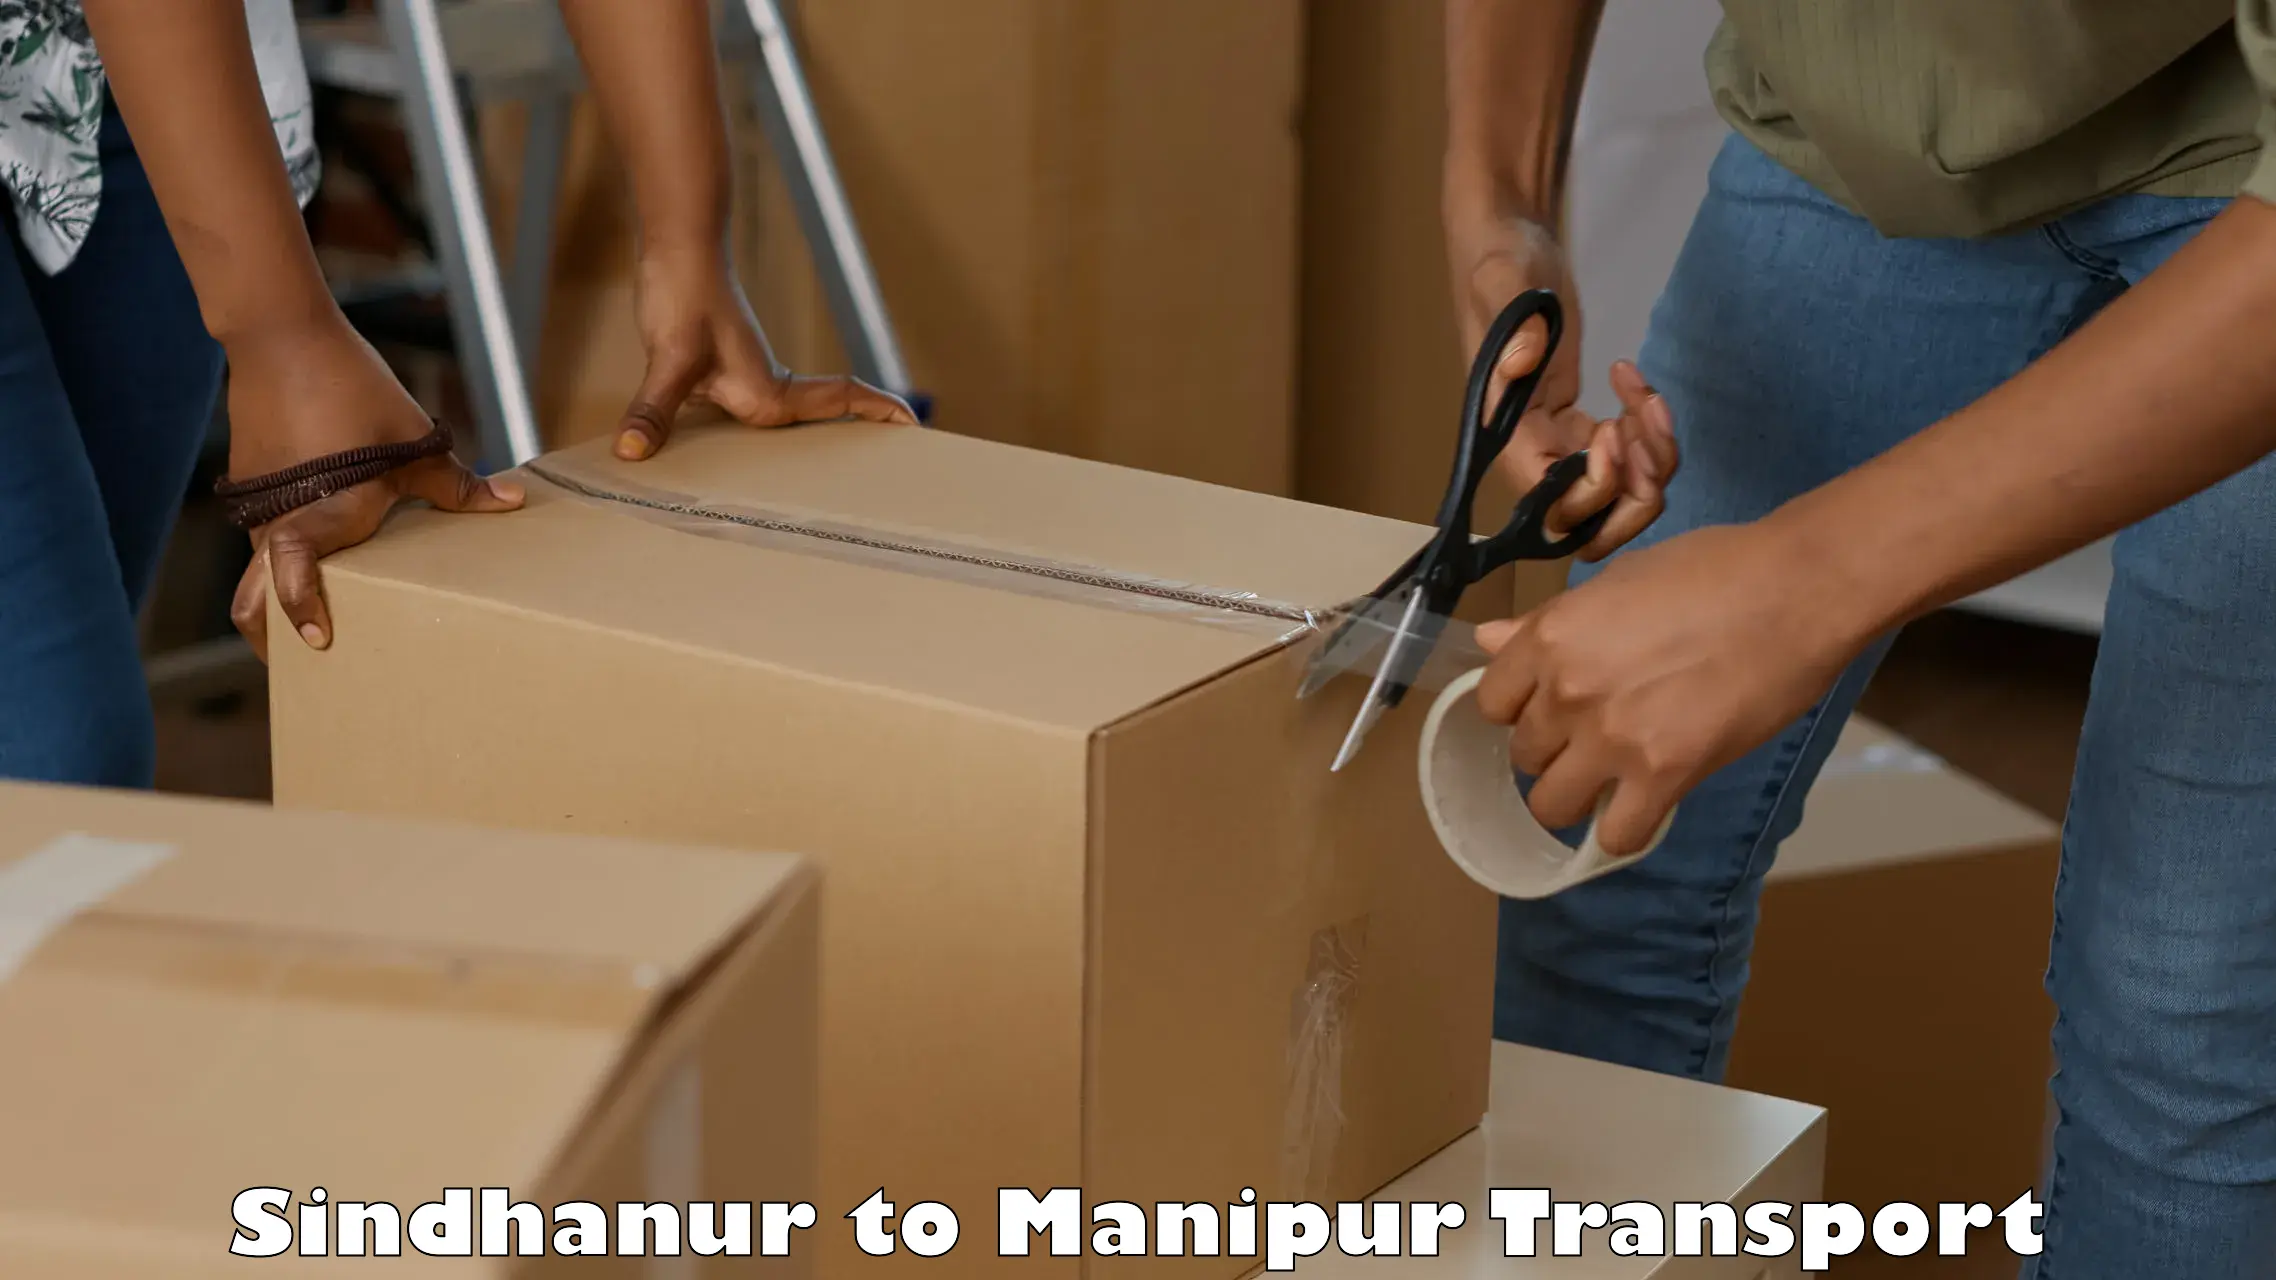 Furniture transport service Sindhanur to Chandel